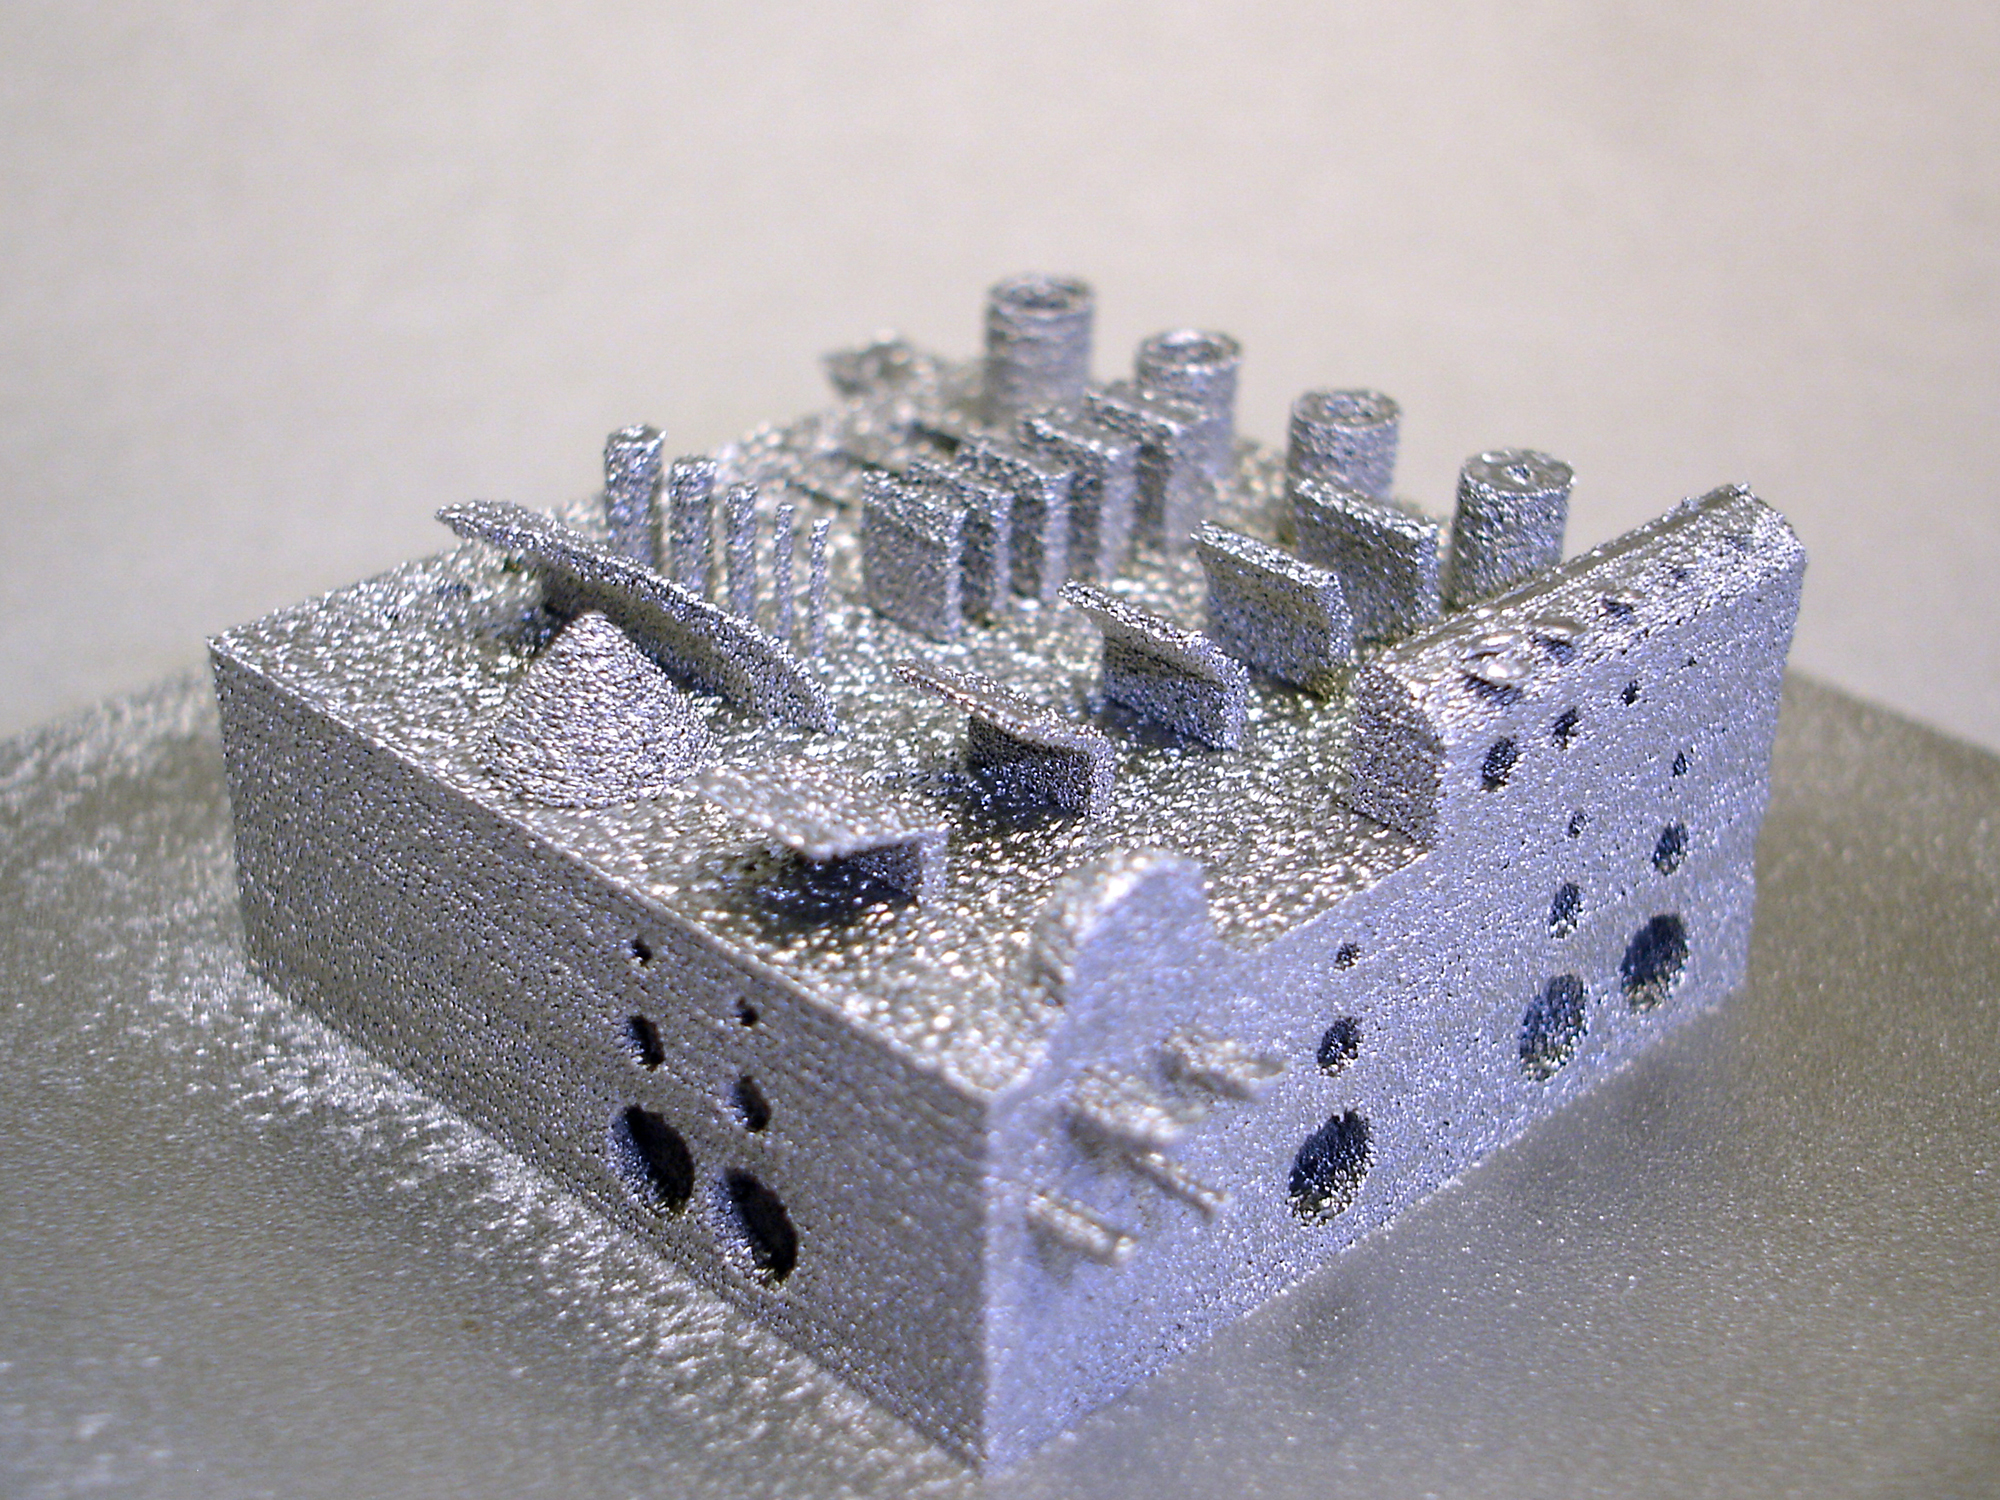 Demonstratorbauteil aus Eisenpulver, gefertigt durch Selektives Elektronenstrahlschmelzen (Design aus Agent-3D)